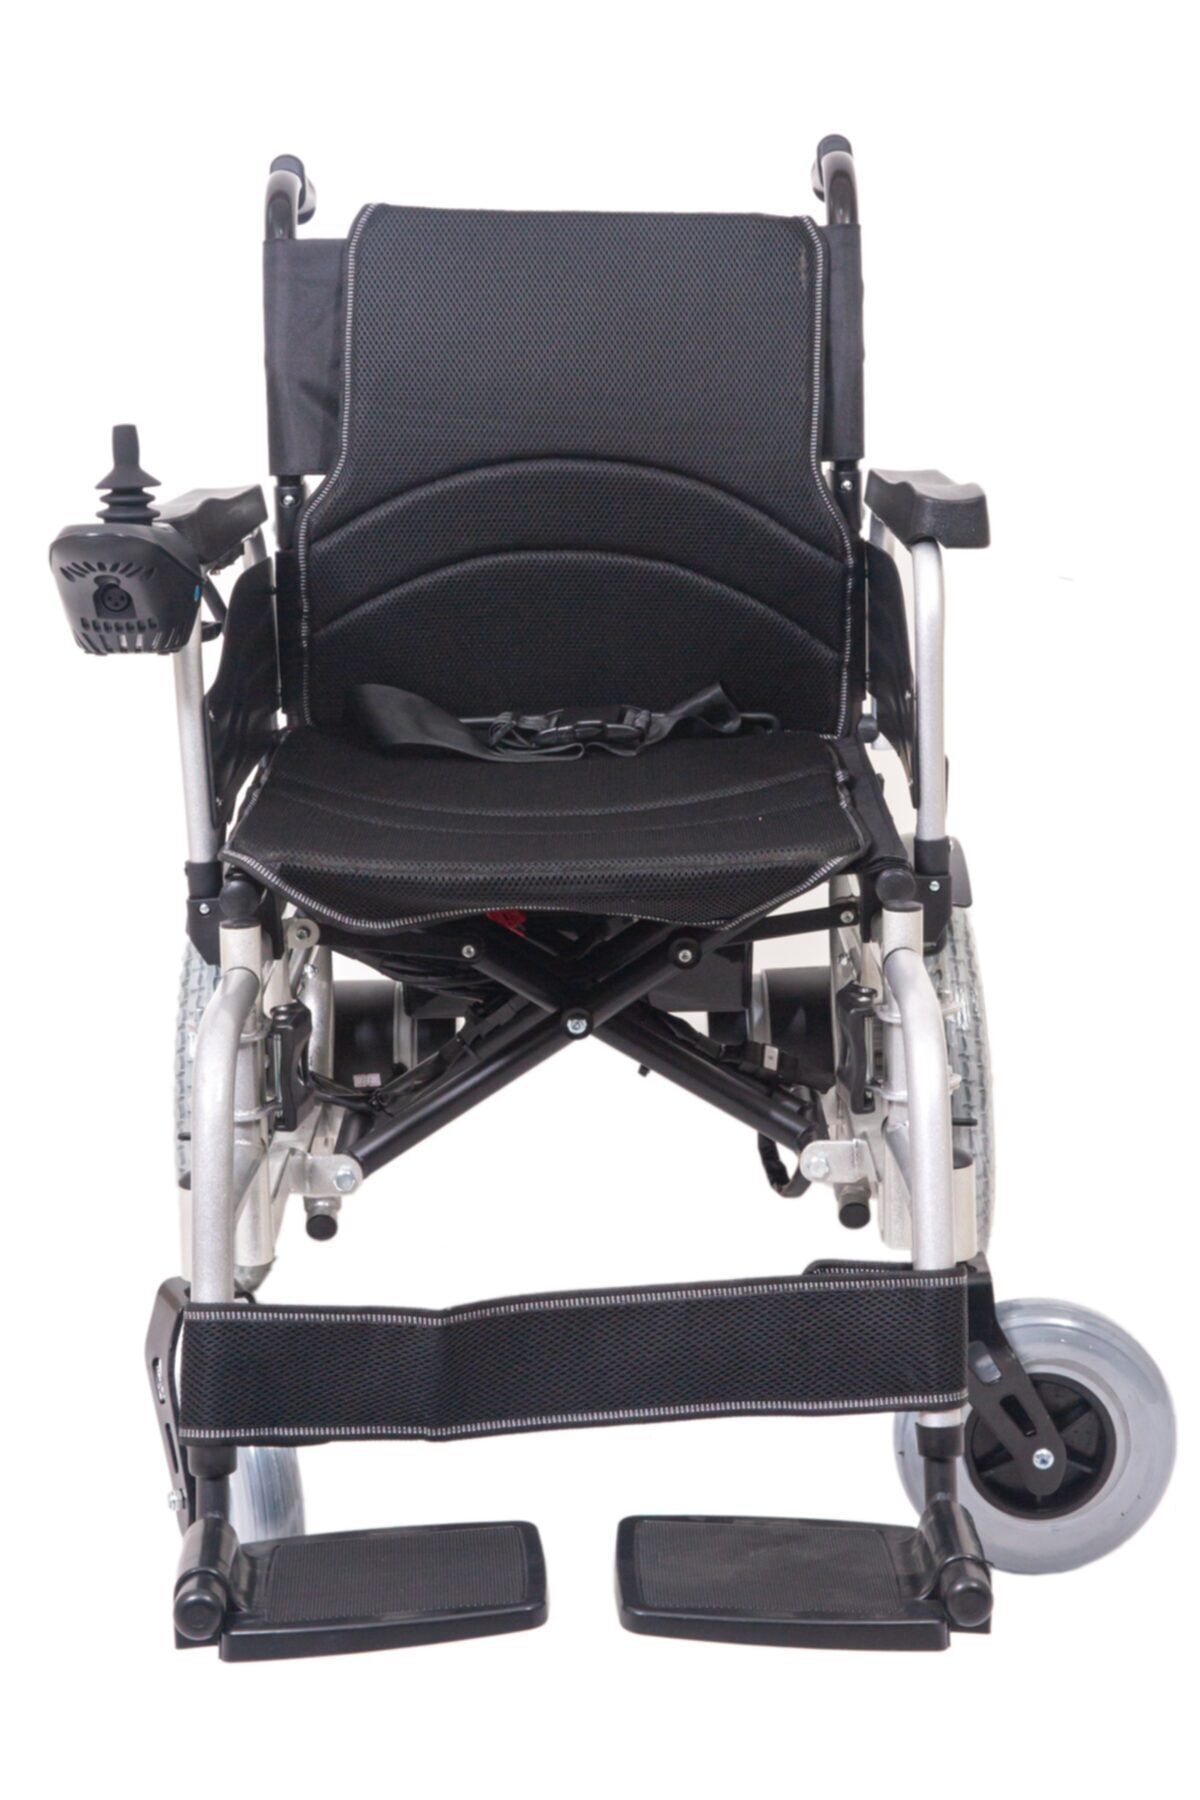 FUHASSAN Güçlü Akü Güçlü Motor Tekerlekli Sandalye 700w Motor (FH 909)